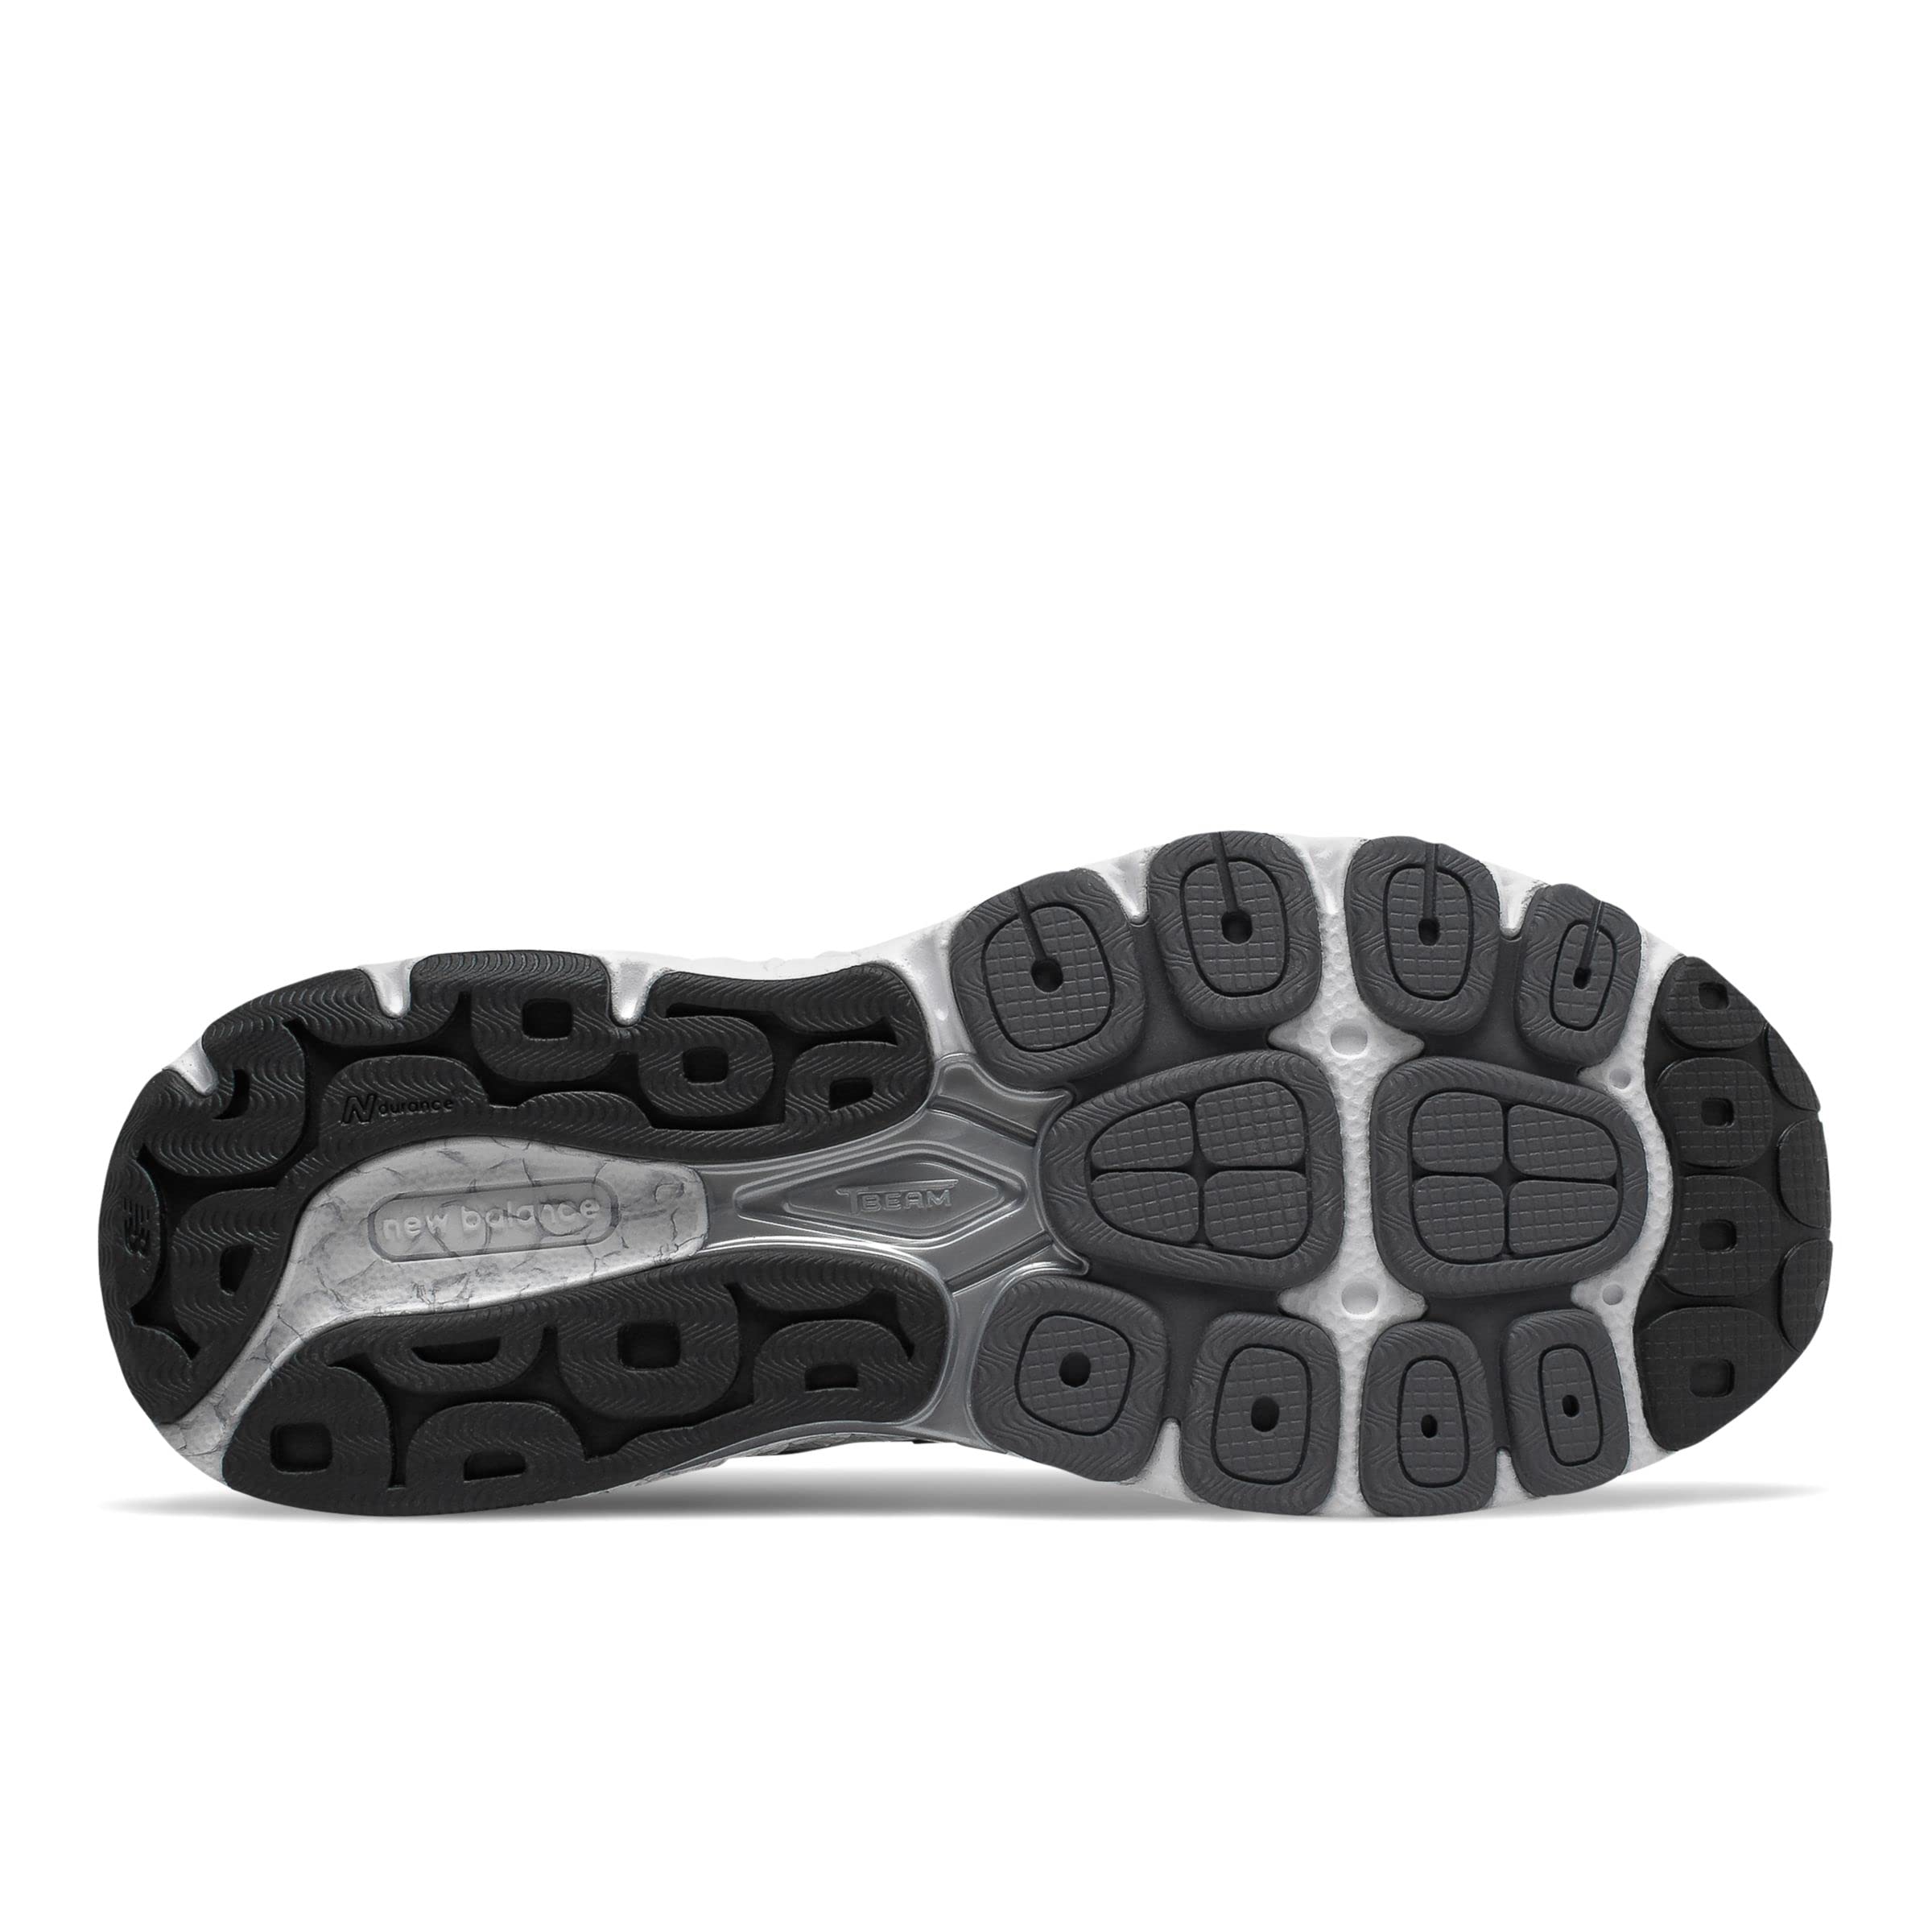 New Balance Women's 940 V4 Running Shoe, Black/Magnet, 9